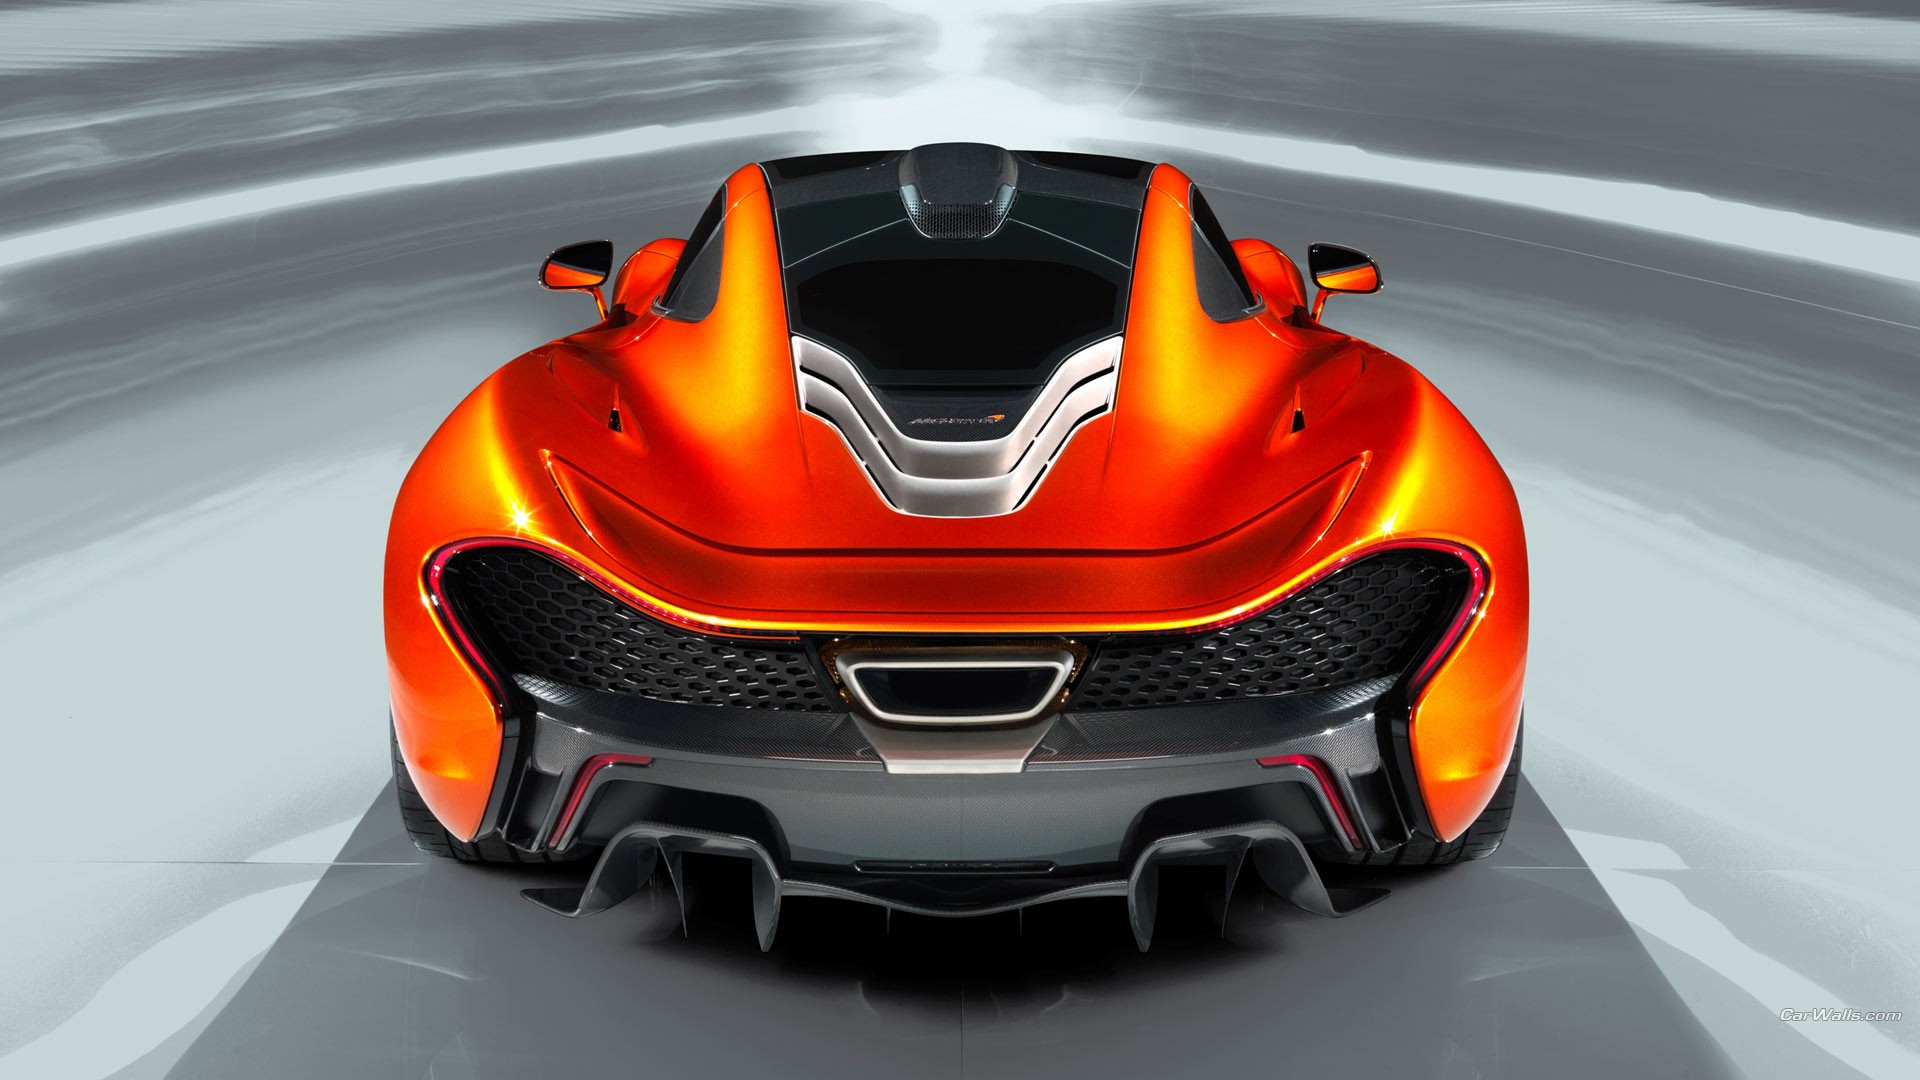 McLaren P1 Wallpaper